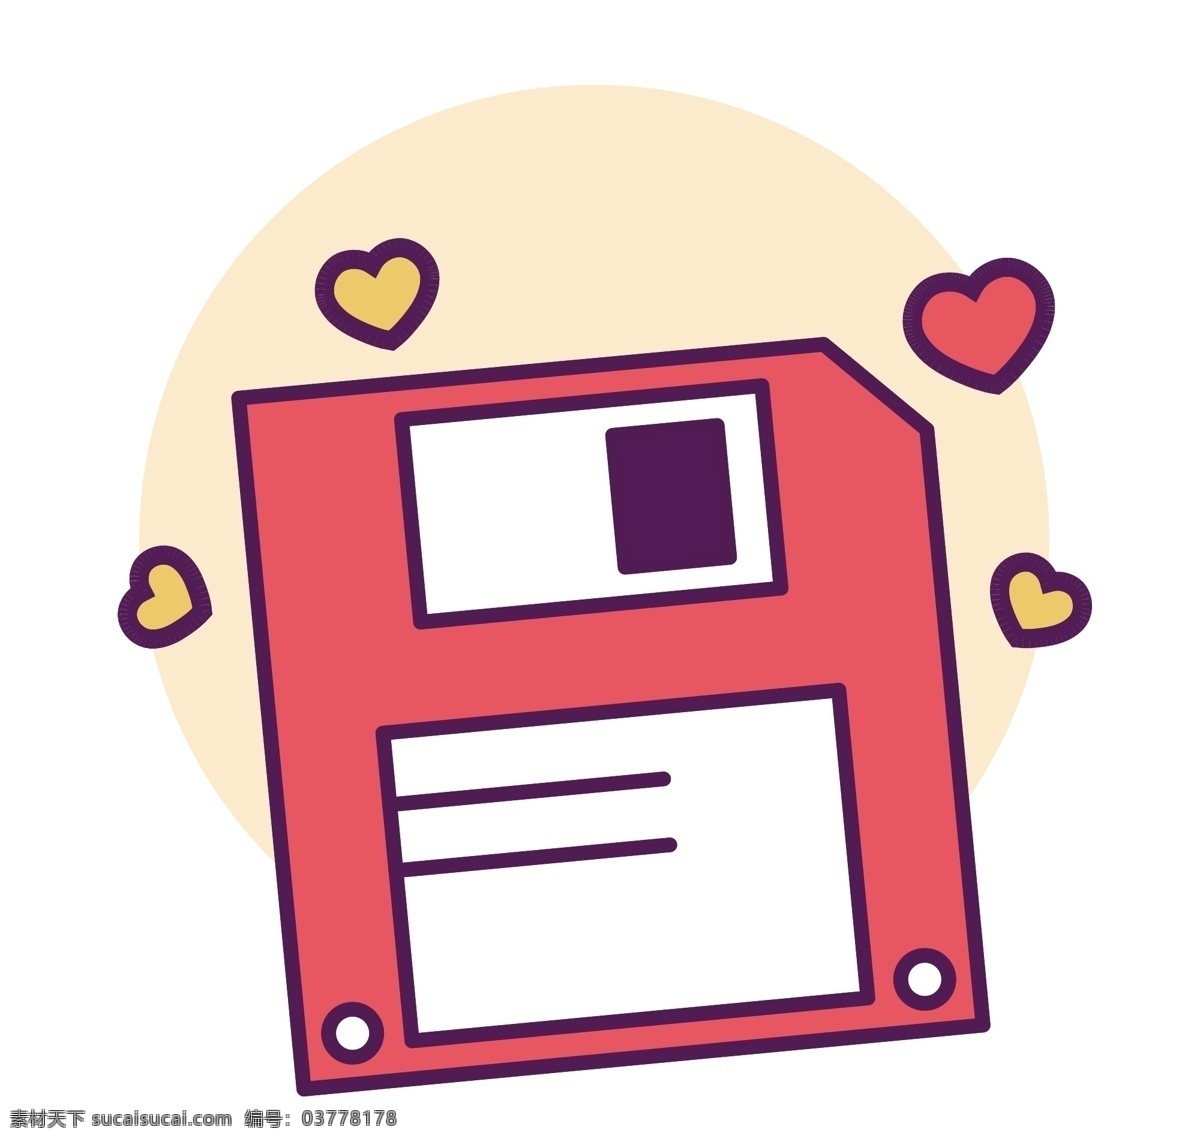 卡通 粉色 存储卡 meb 风格 图标 可爱 清新 扁平化 粉色存储卡 圆角 卡通手绘 icon图标 引导页